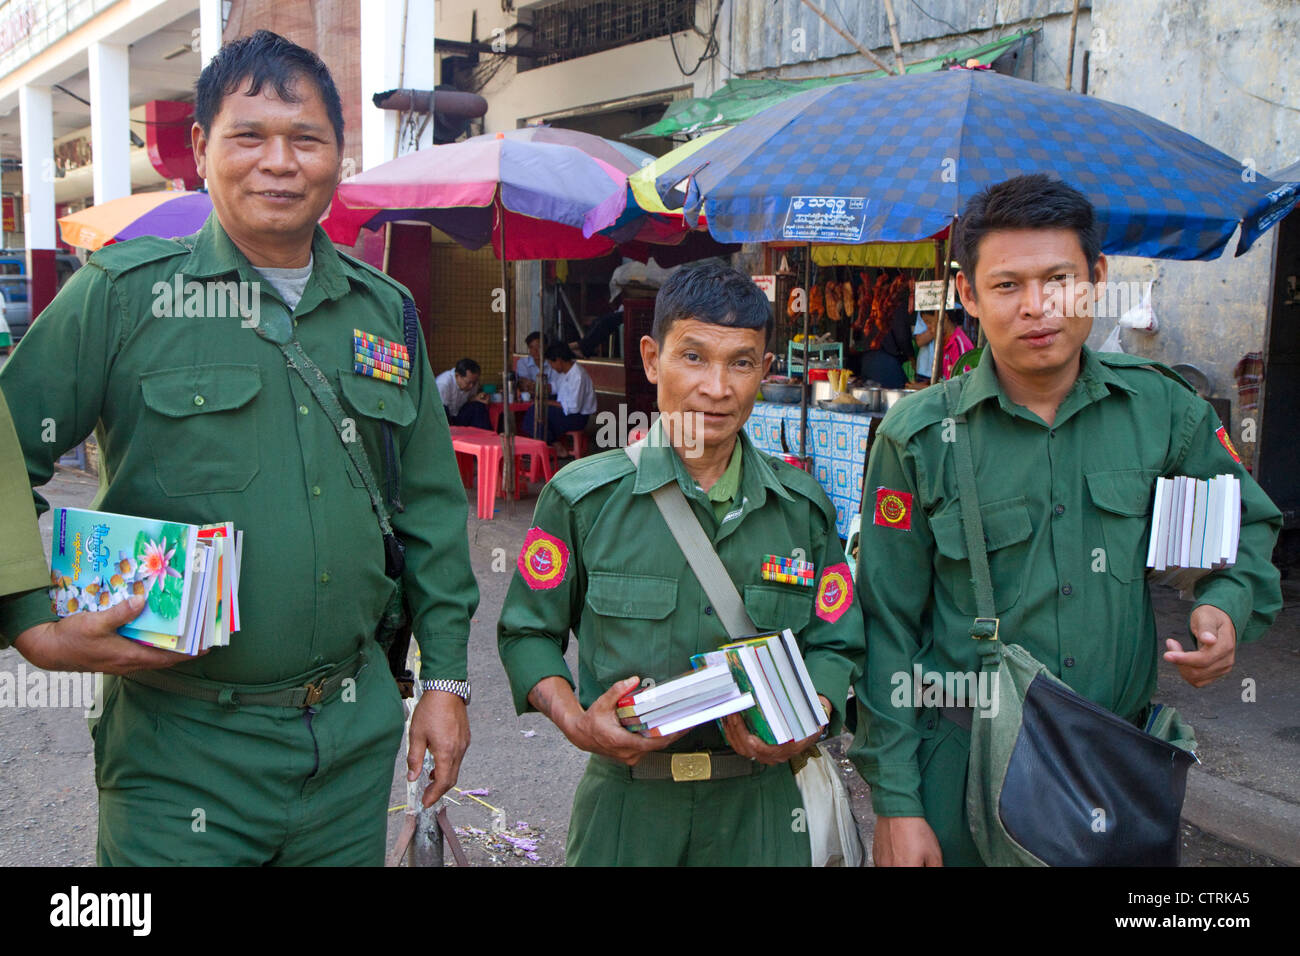 Birmanischen Militärs im Ruhestand in Uniform, Verkauf von Büchern auf der Straße in (Rangoon) Yangon, Myanmar (Burma). Stockfoto